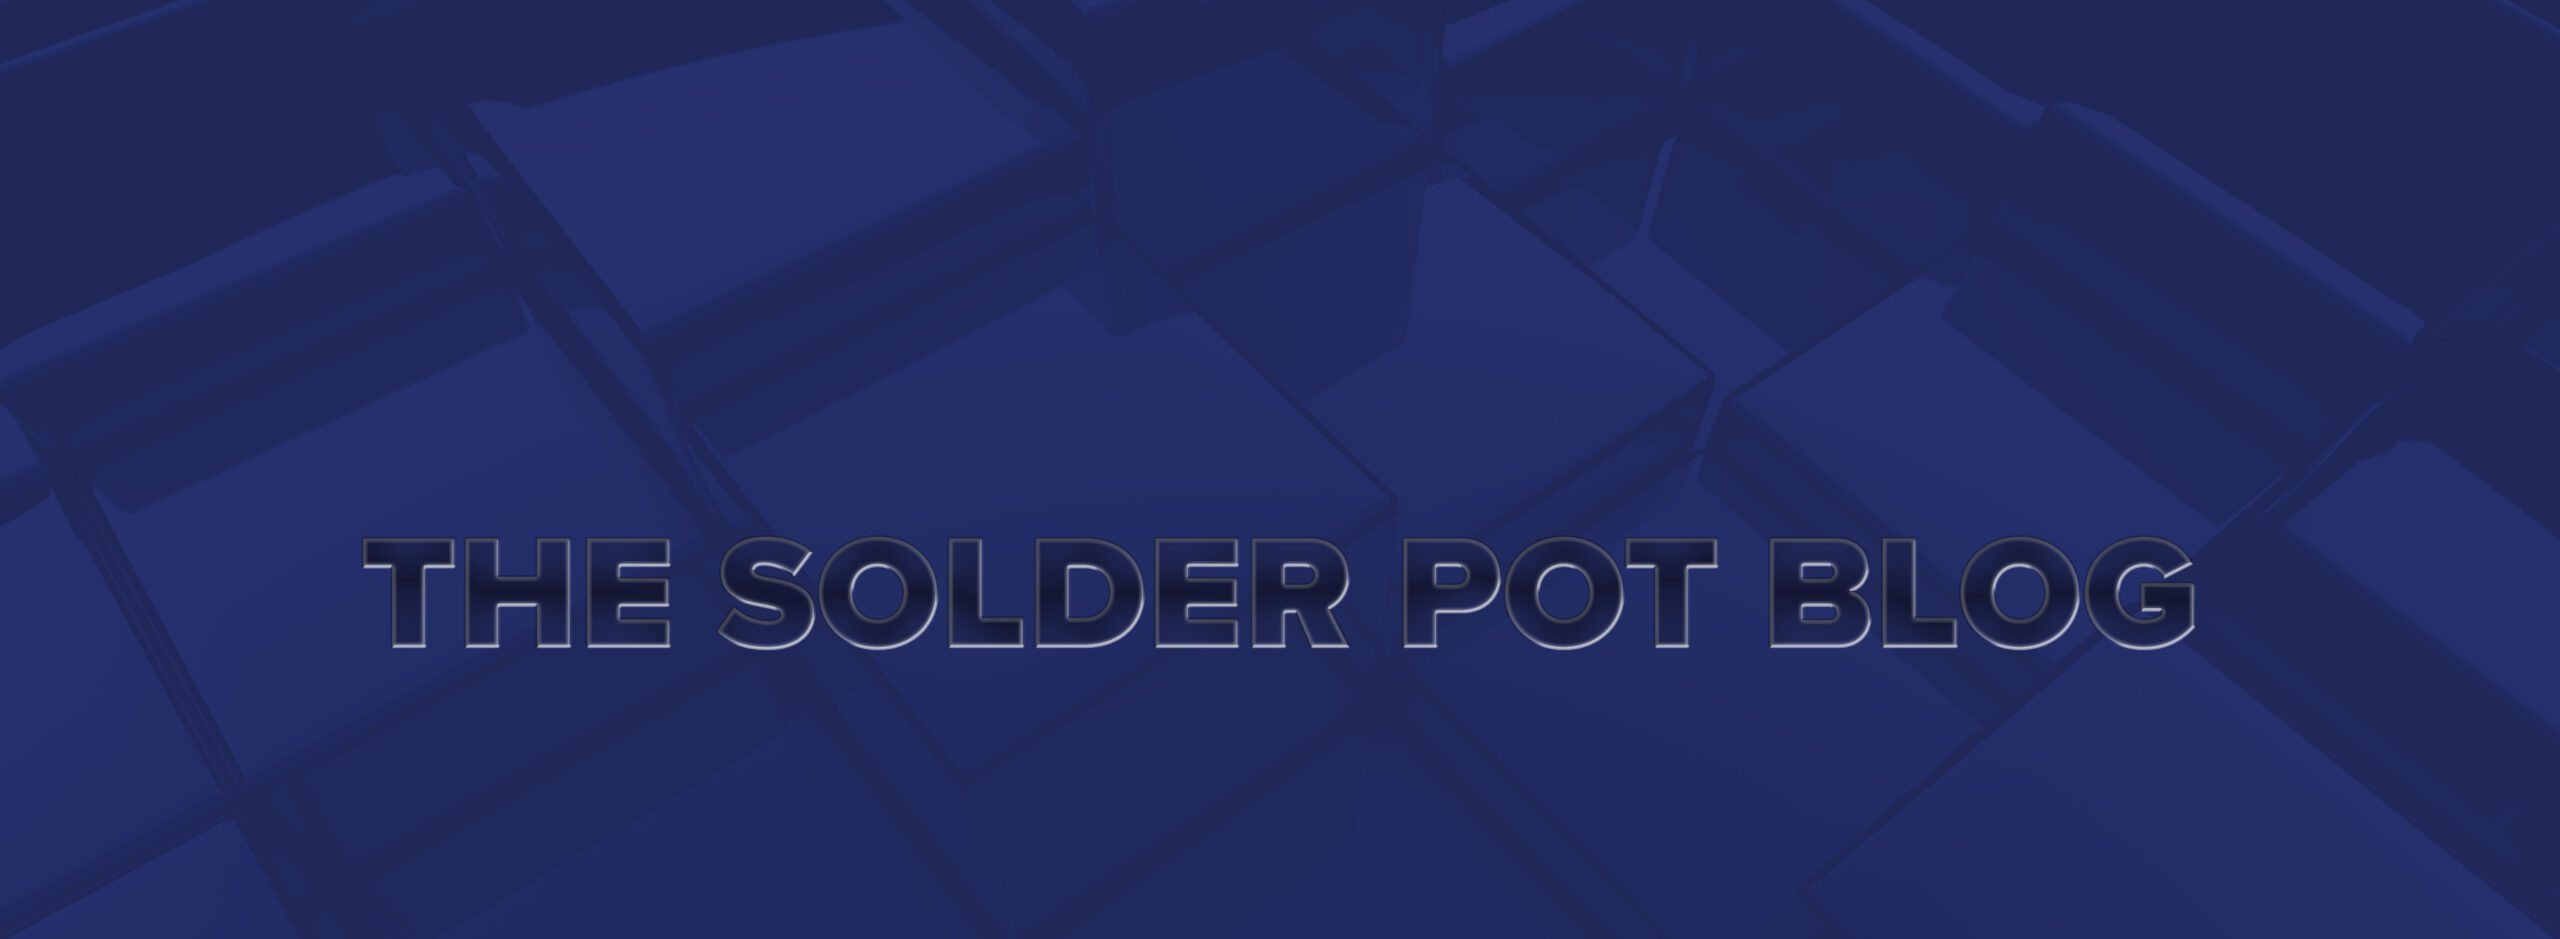 solder pot blog